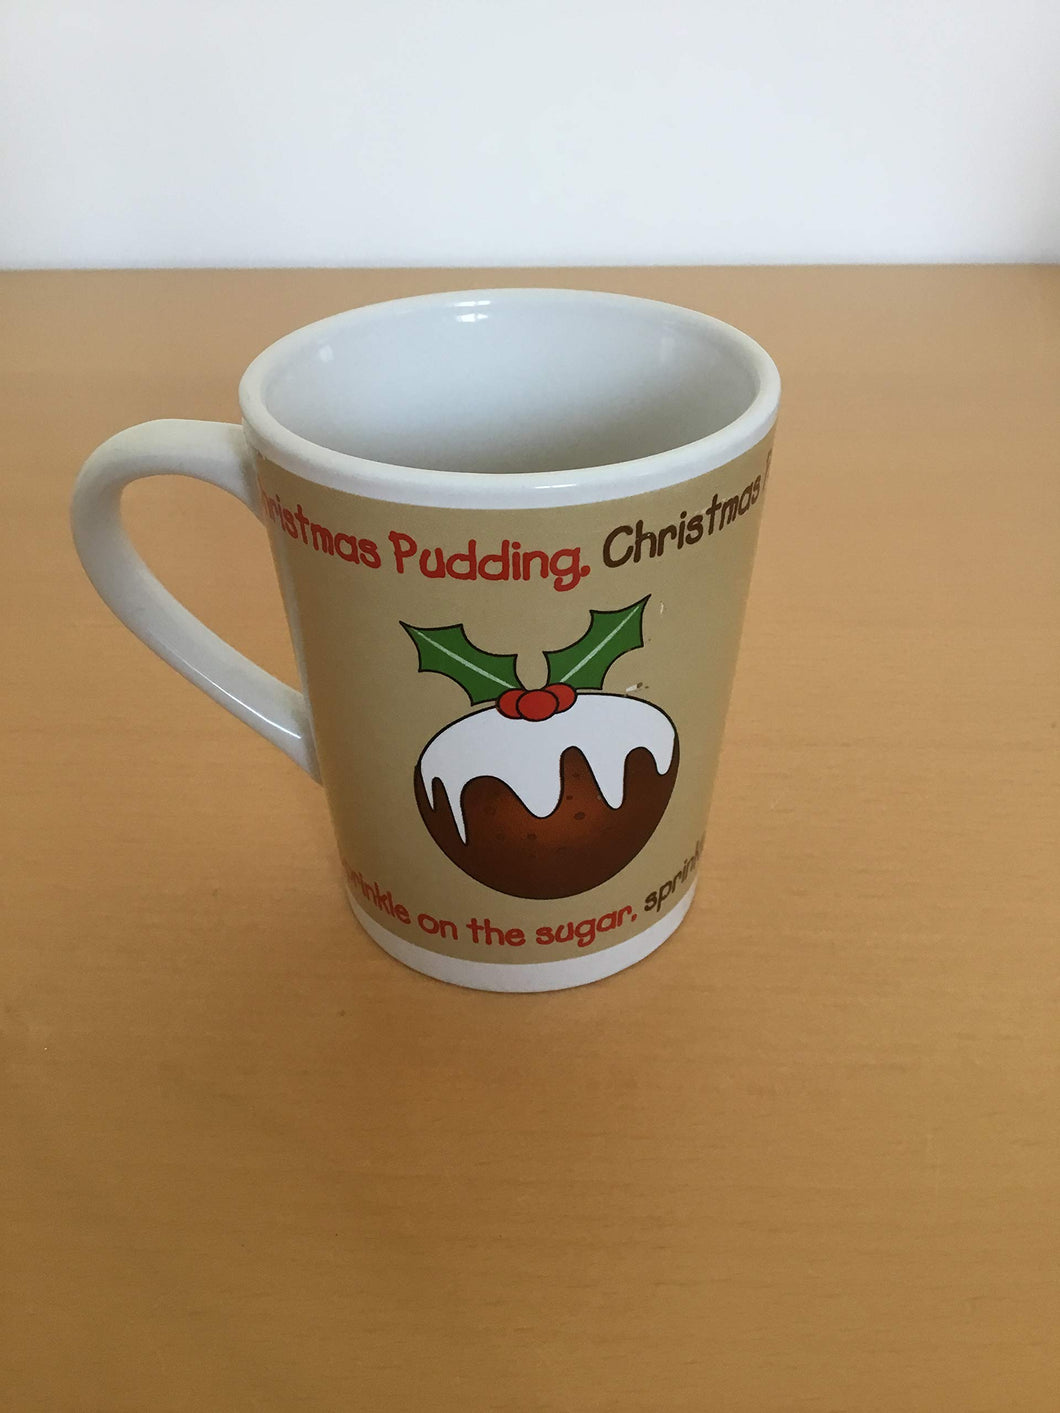 Christmas pudding mug